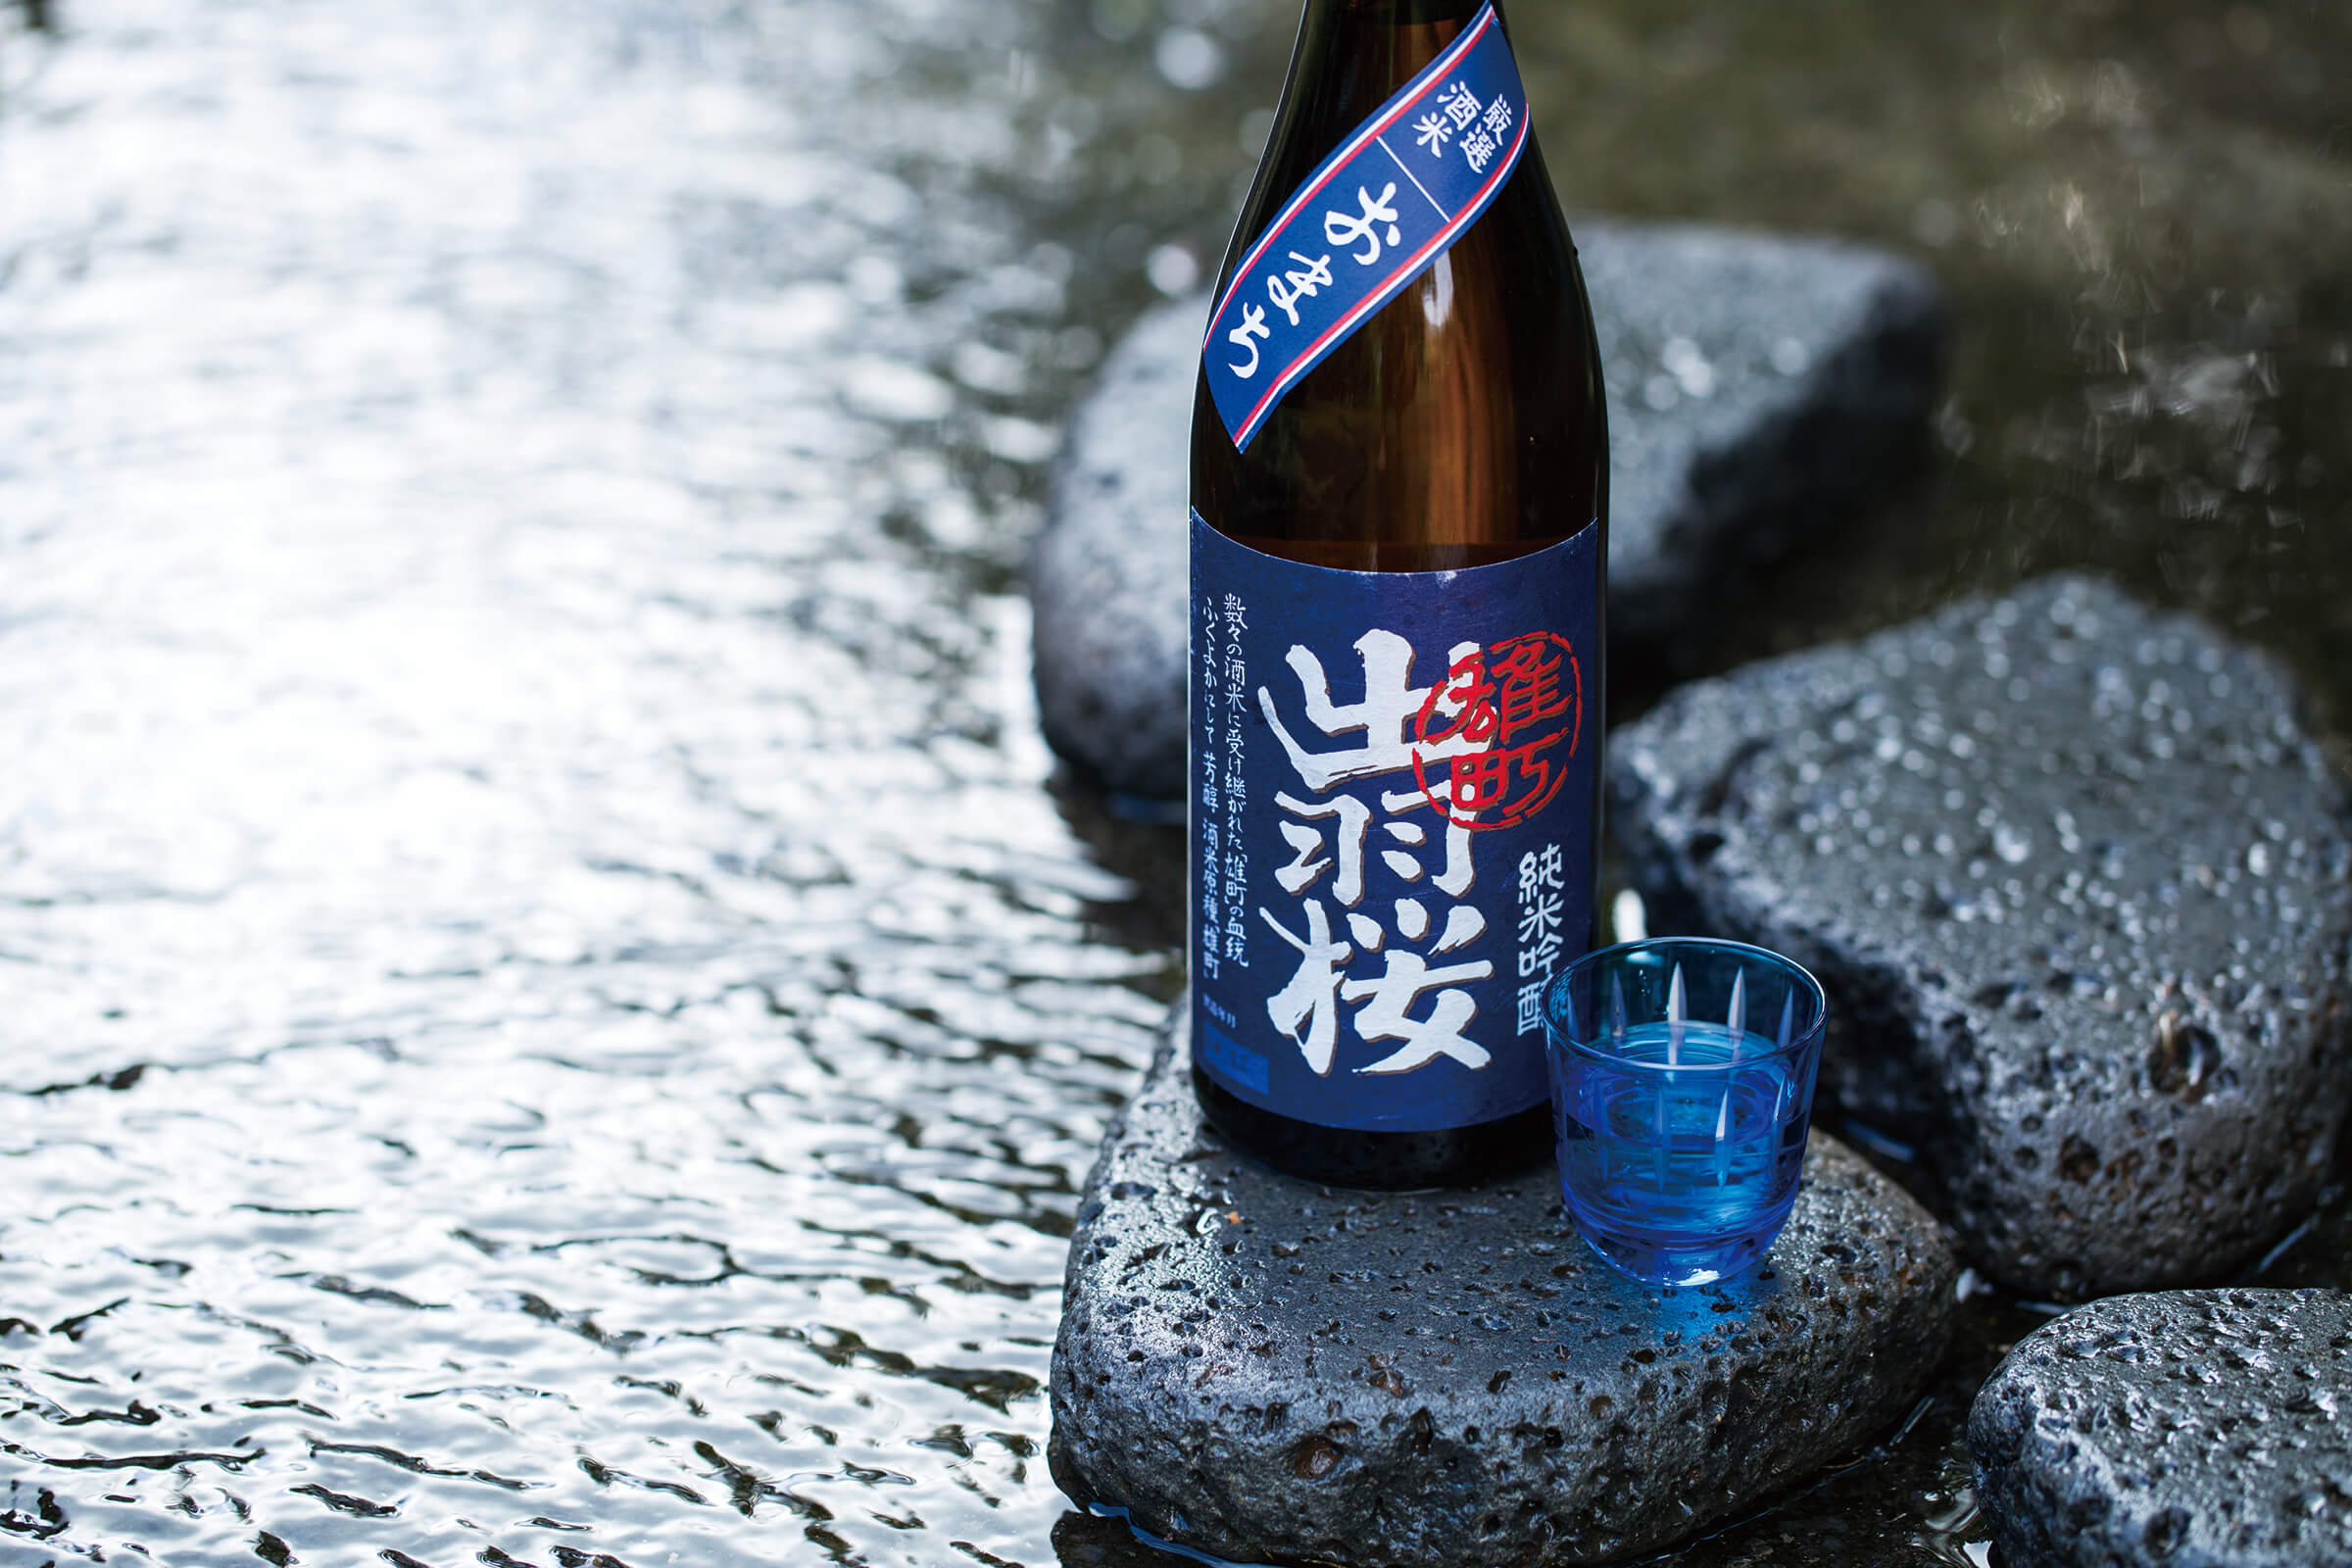 Dewazakura “Omachi” bottle